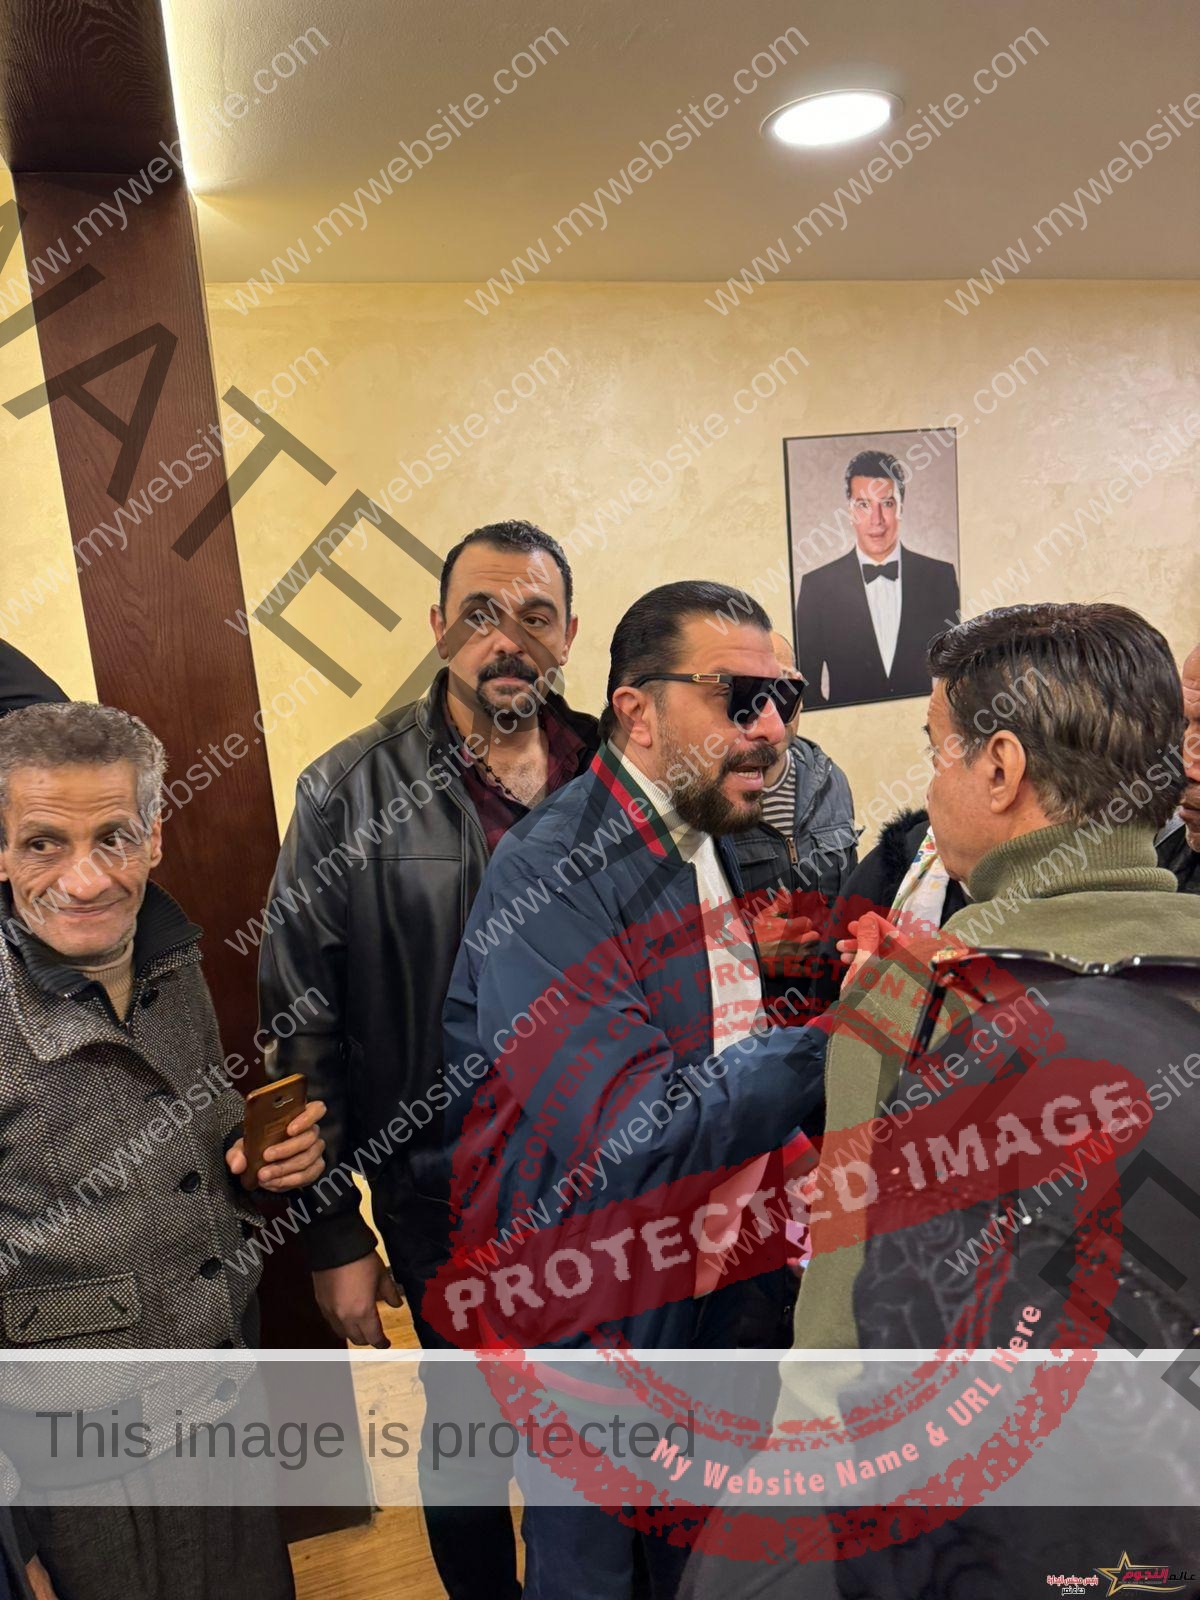 استقبال حافل للفنان مصطفى كامل في نقابة الموسيقيين بعد عودته لممارسة عمله